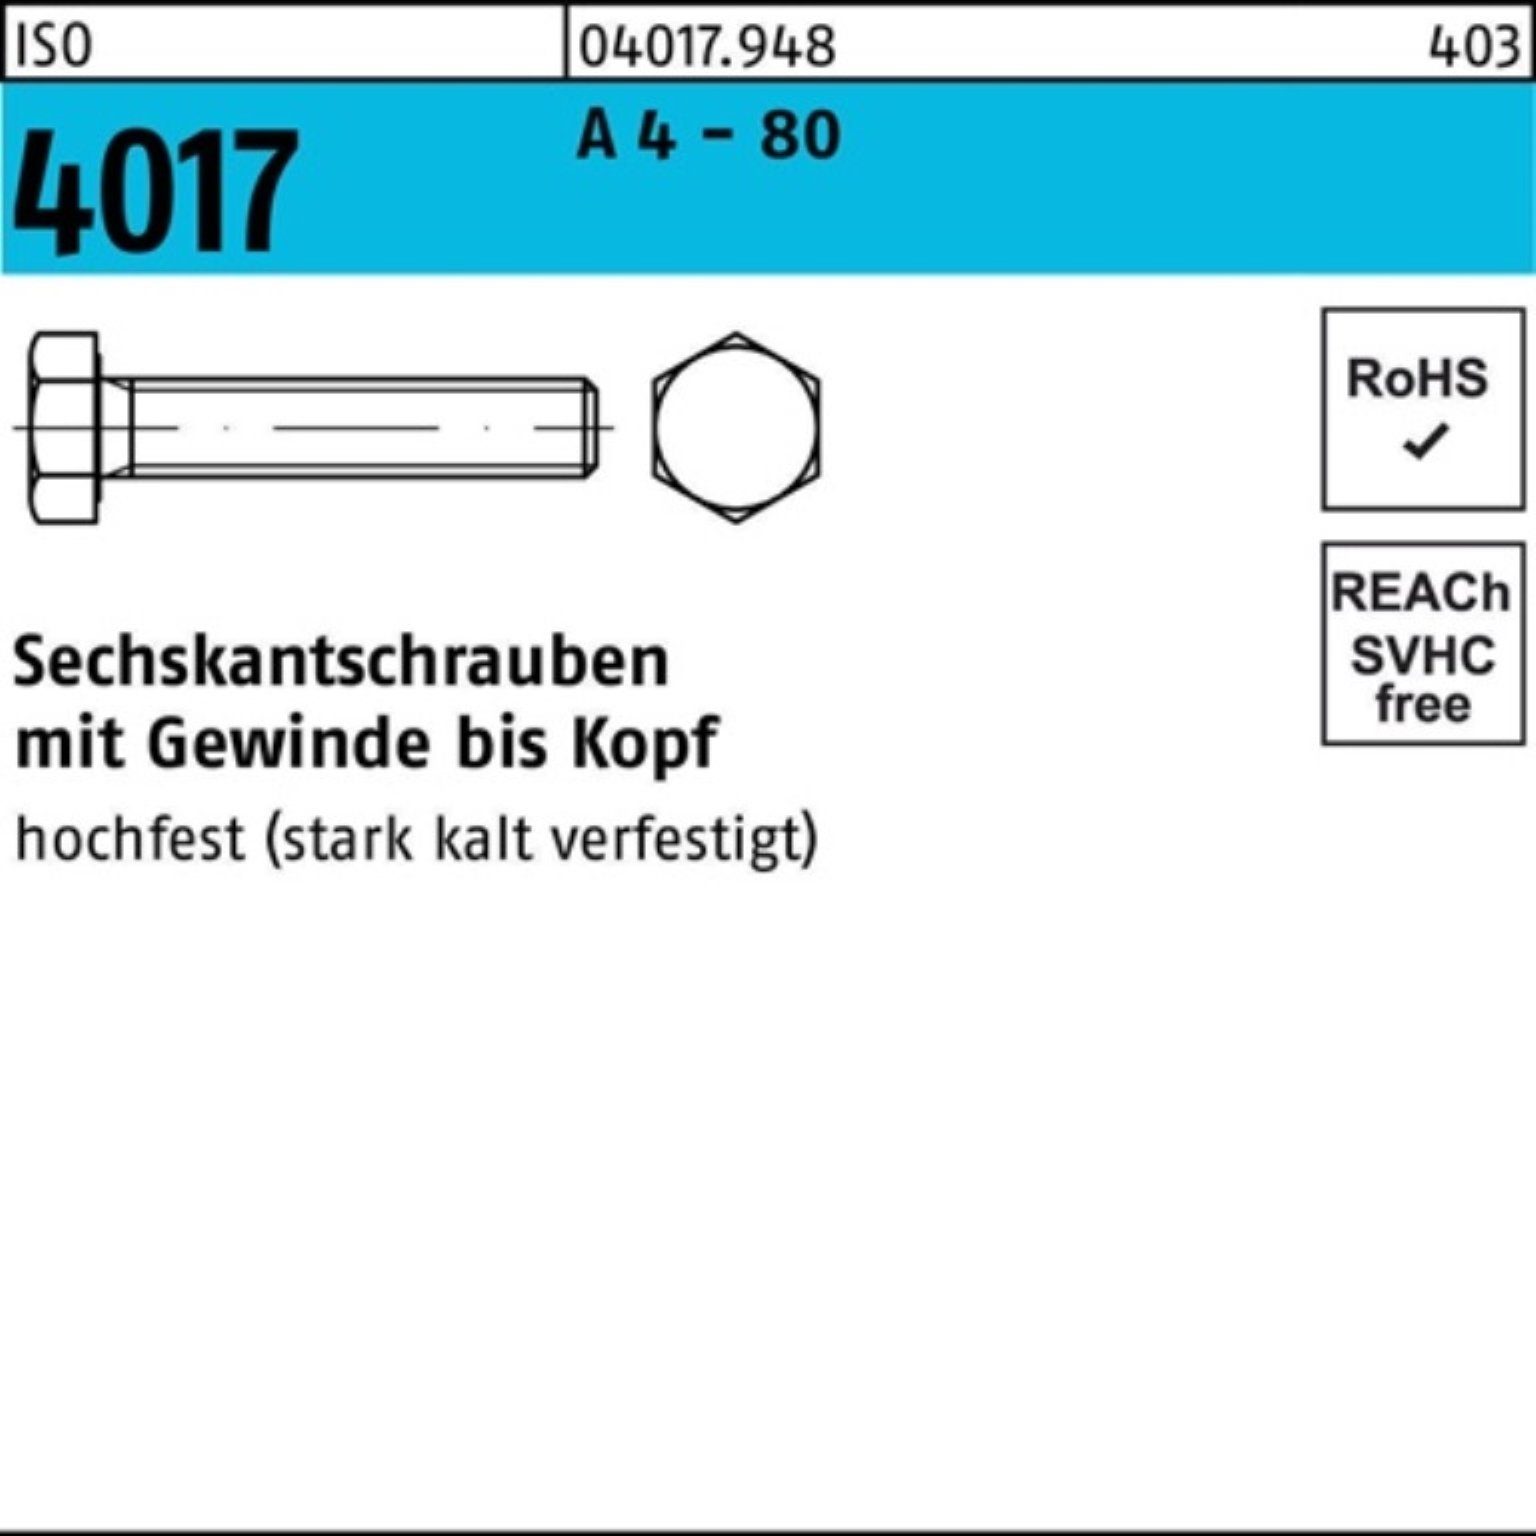 Bufab Sechskantschraube 100er Pack Sechskantschraube ISO 4017 VG M8x 25 A 4 - 80 100 Stück IS